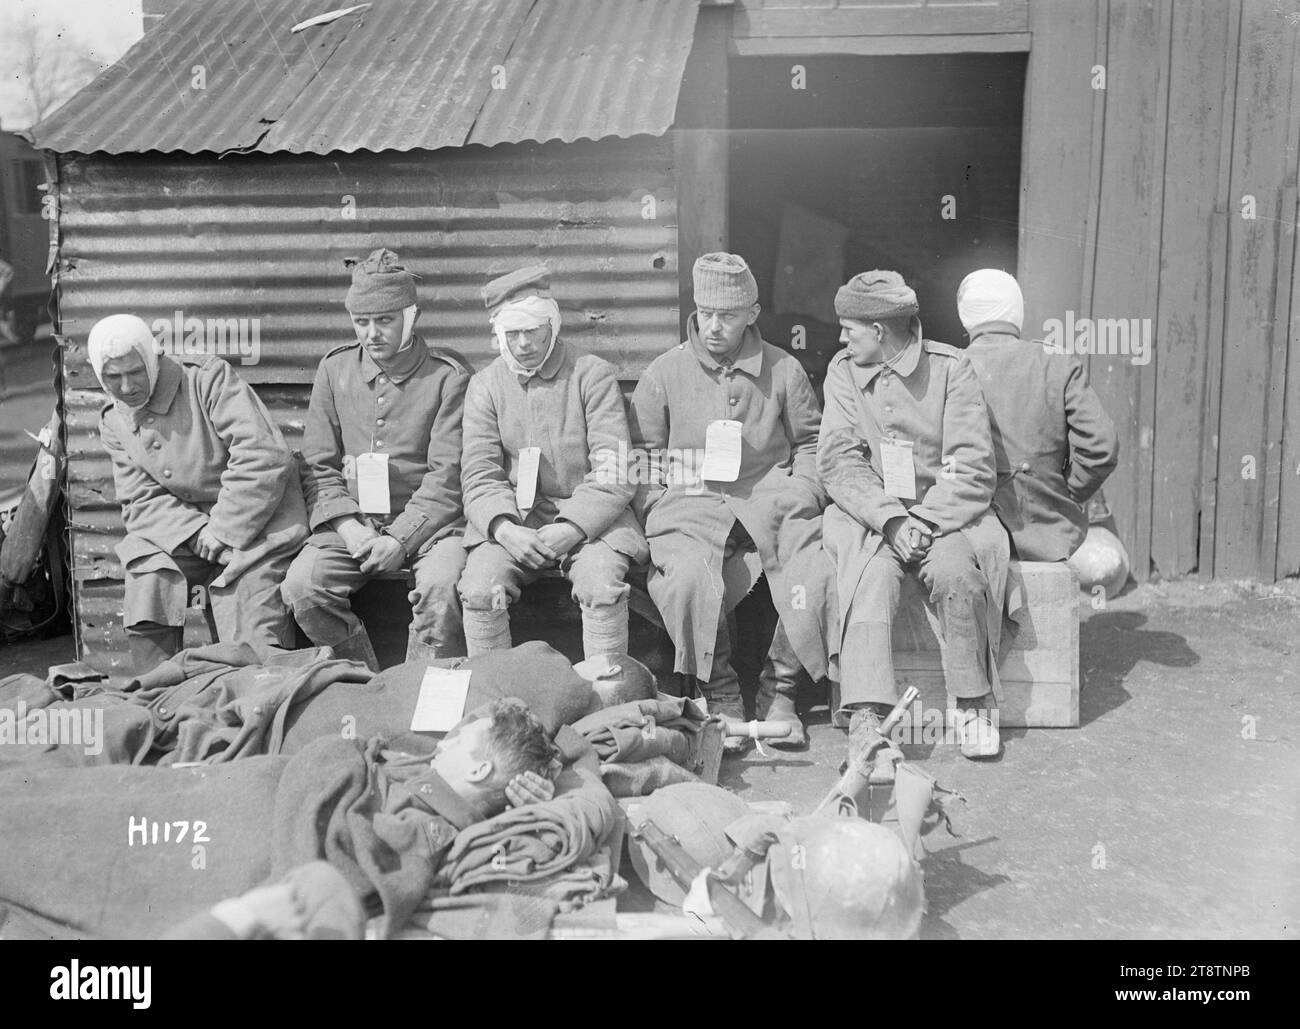 Verwundete deutsche Gefangene in Louvencourt, Frankreich, während des Ersten Weltkriegs, verwundete deutsche Gefangene in einer neuseeländischen Vernichtungsstation in Louvencourt Mit ihren Wunden verbündet sitzen sie und warten auf die Evakuierung. Zwei liegen auf Bahren. Foto vom 22. April 1918 Stockfoto